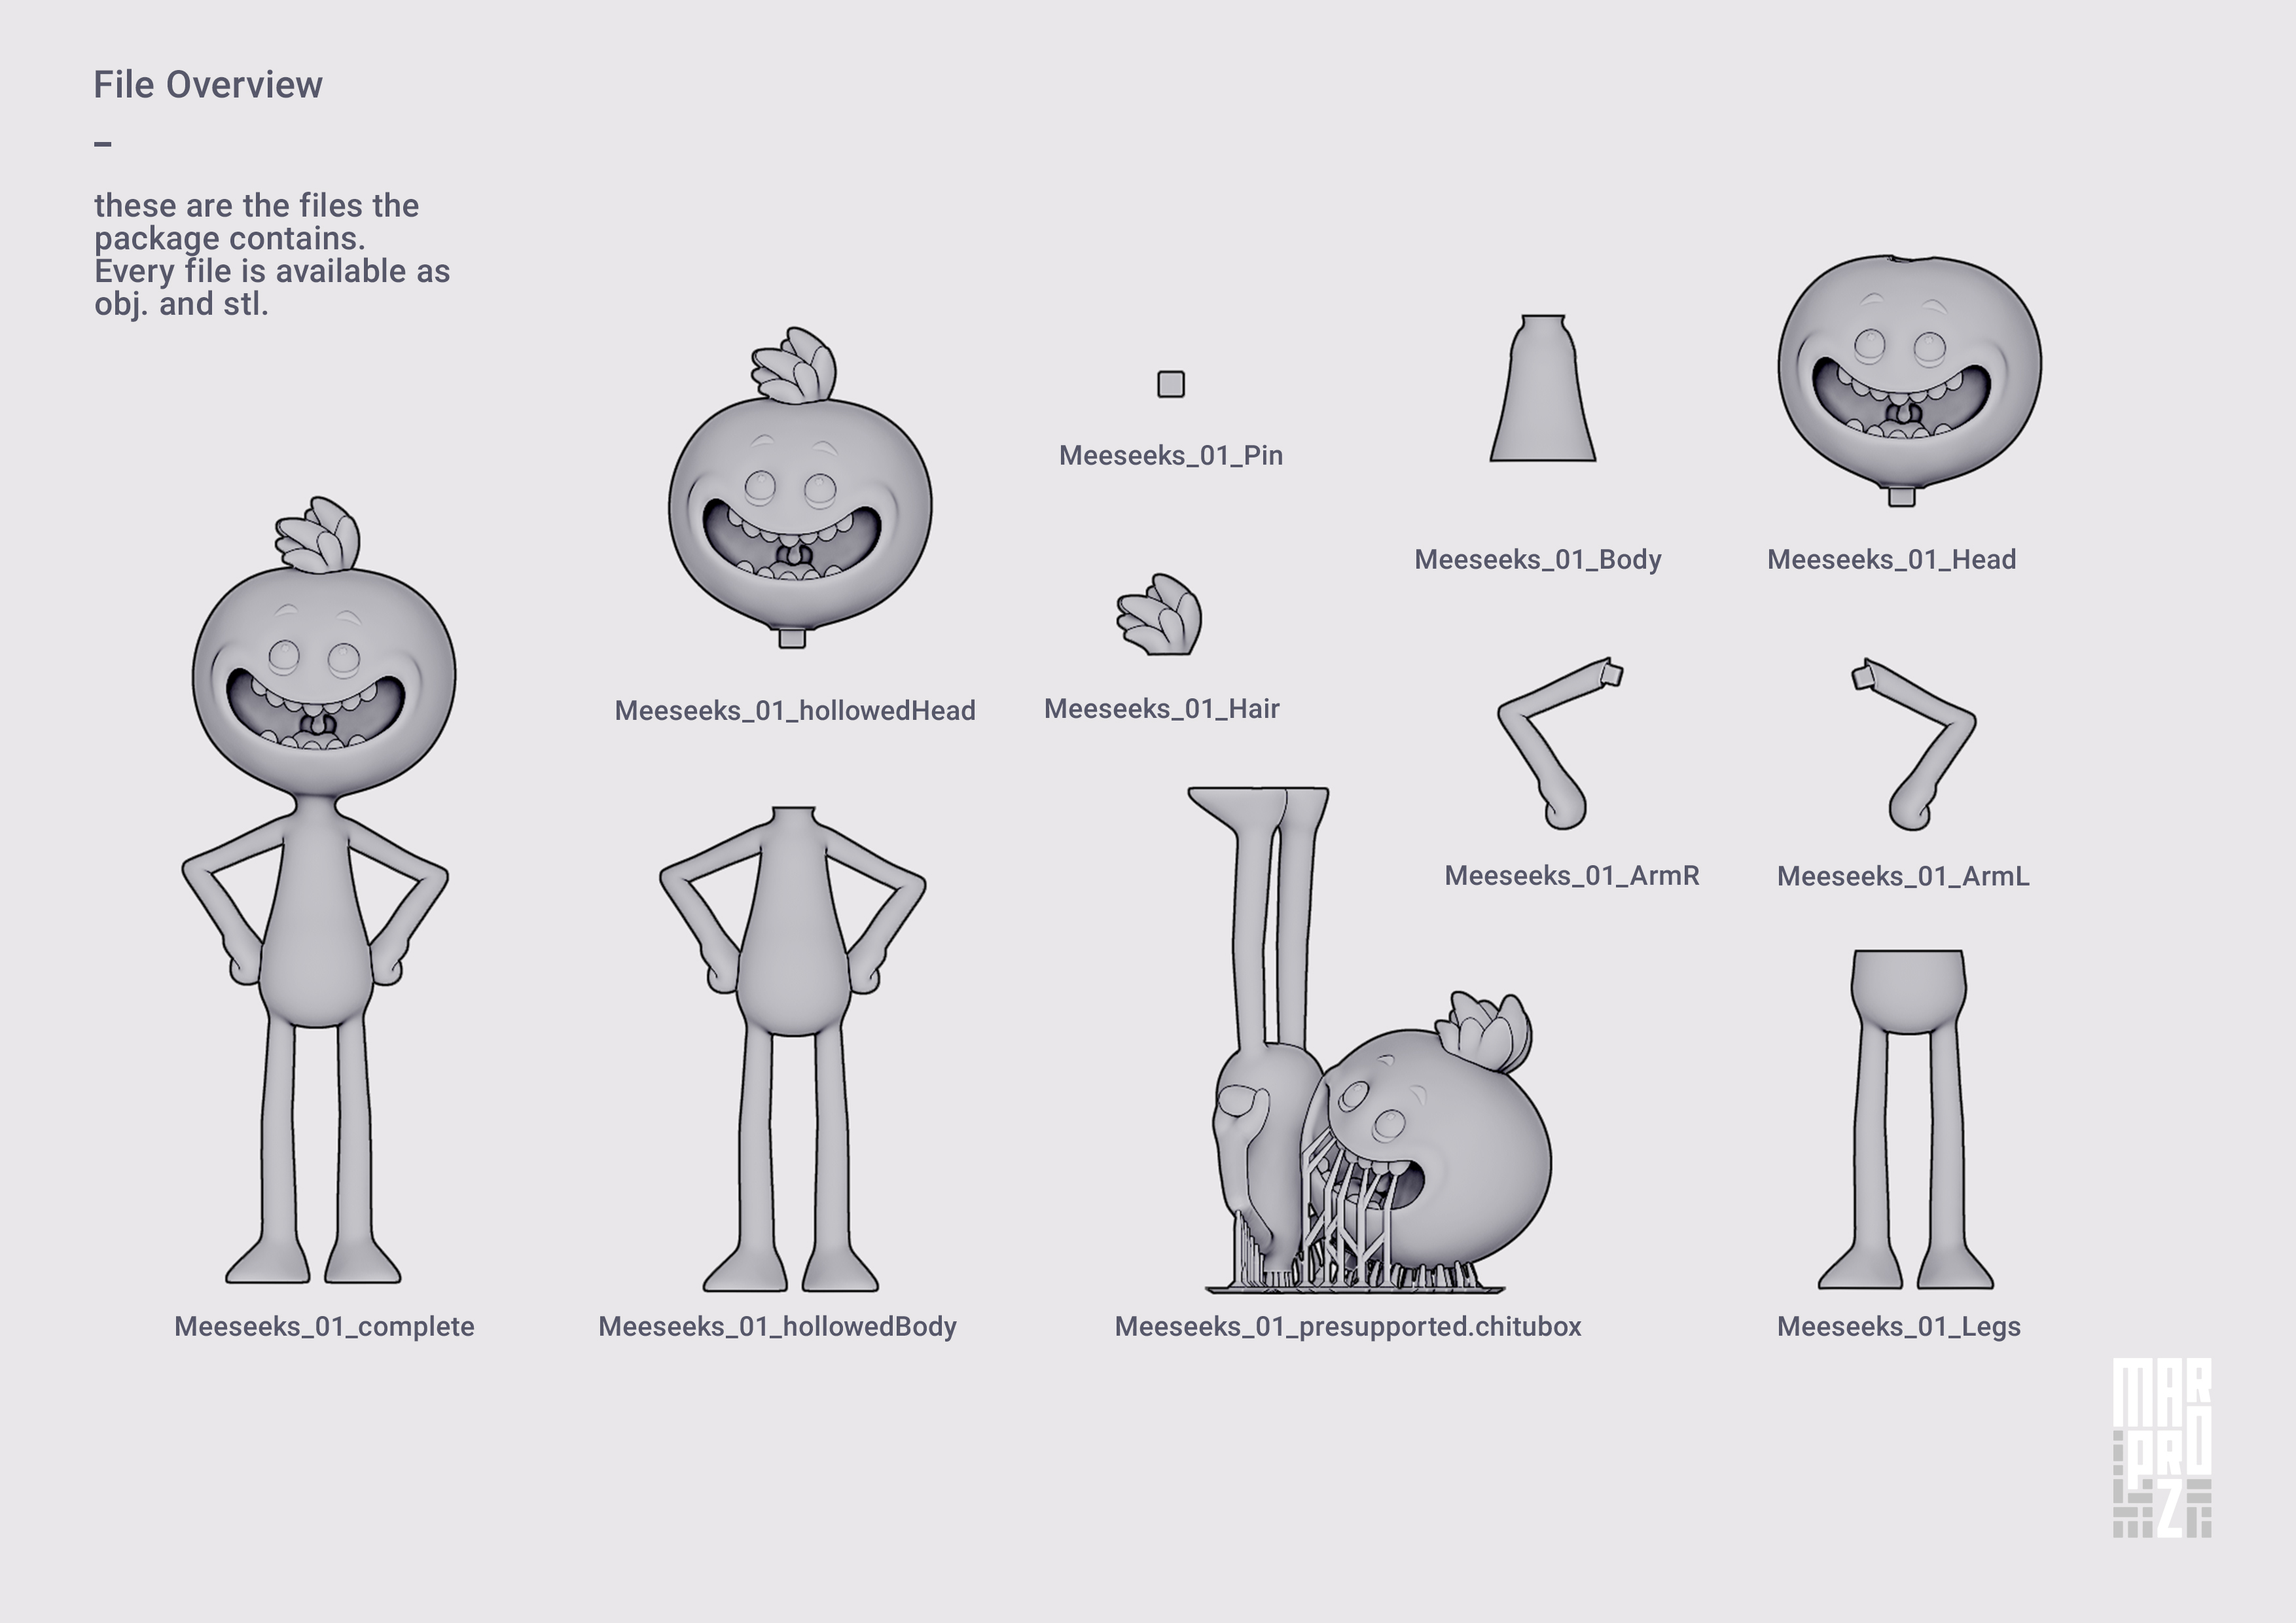 3D Printed Rick and Morty - Mr. Meeseeks by MarproZ